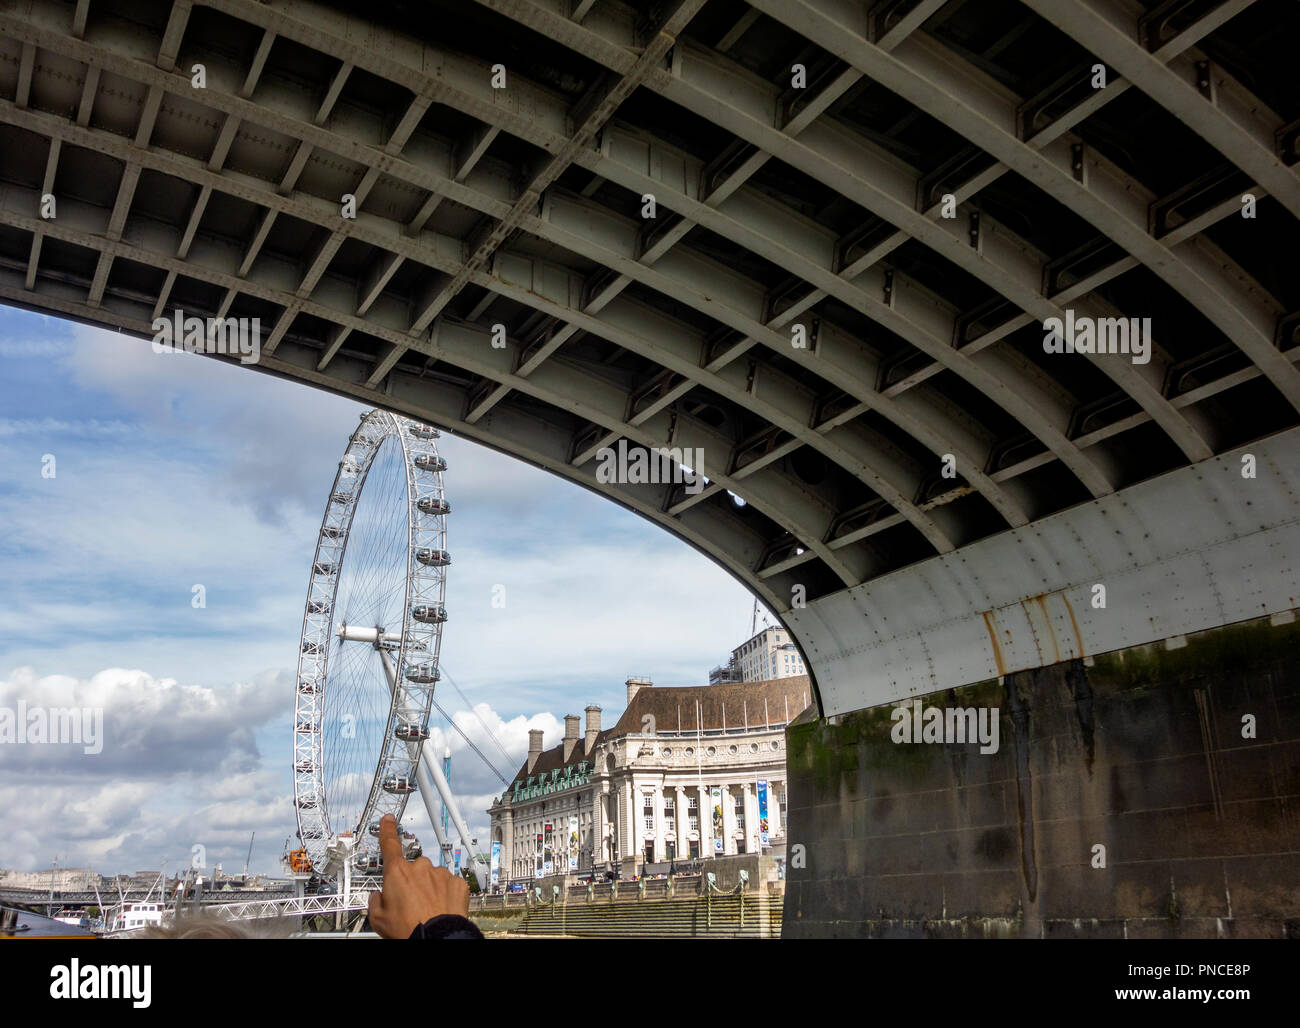 Le London Eye, grande roue, avec le County Hall. Photographié à partir de la Tamise, en vertu de Westminster Bridge. Banque D'Images